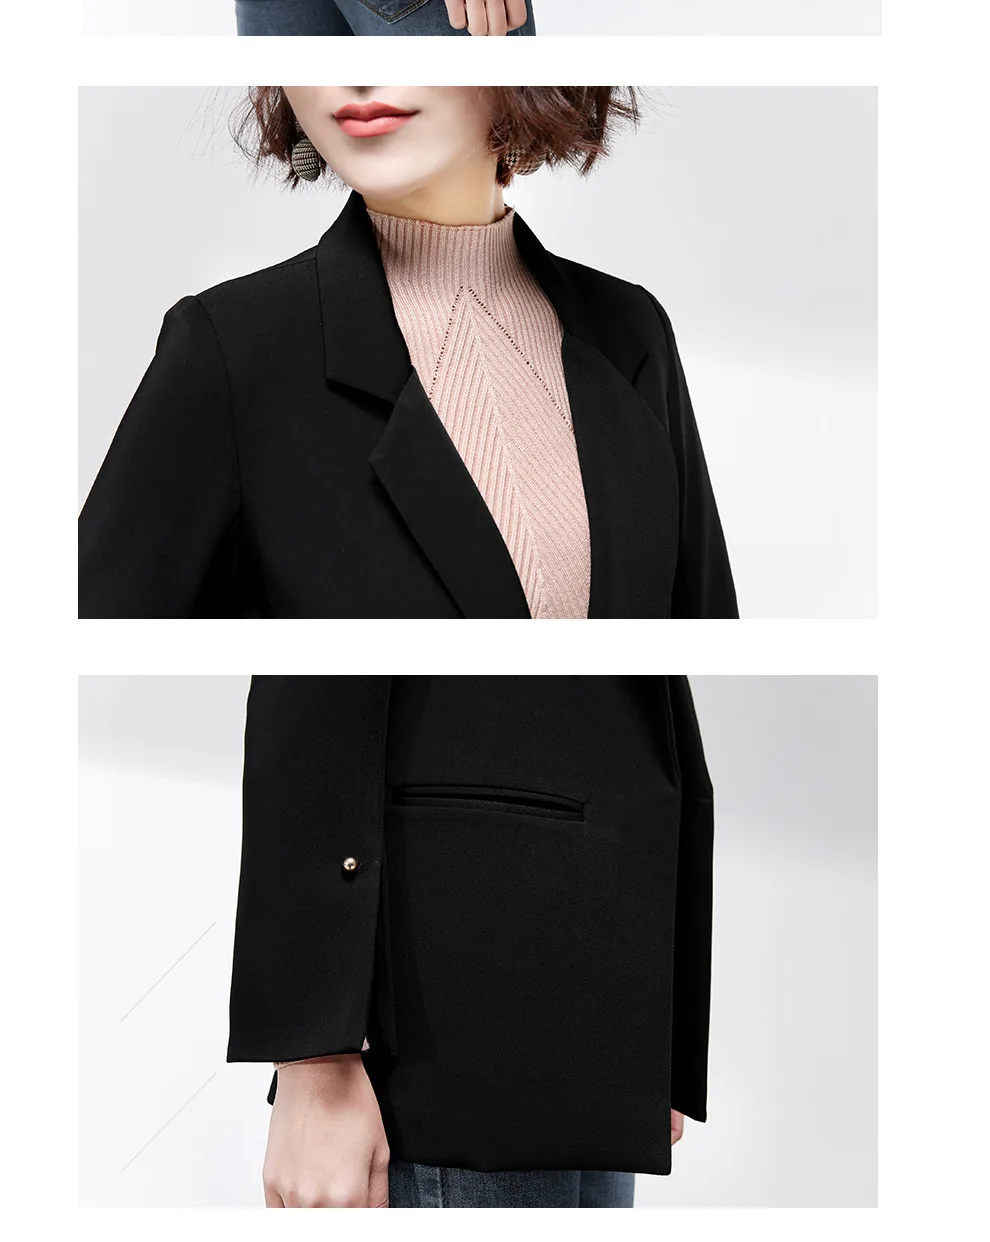 Маленький костюм куртка Женская длинная секция 2019 Осень Корейская версия дикий черный свободный с длинными рукавами случайный маленький